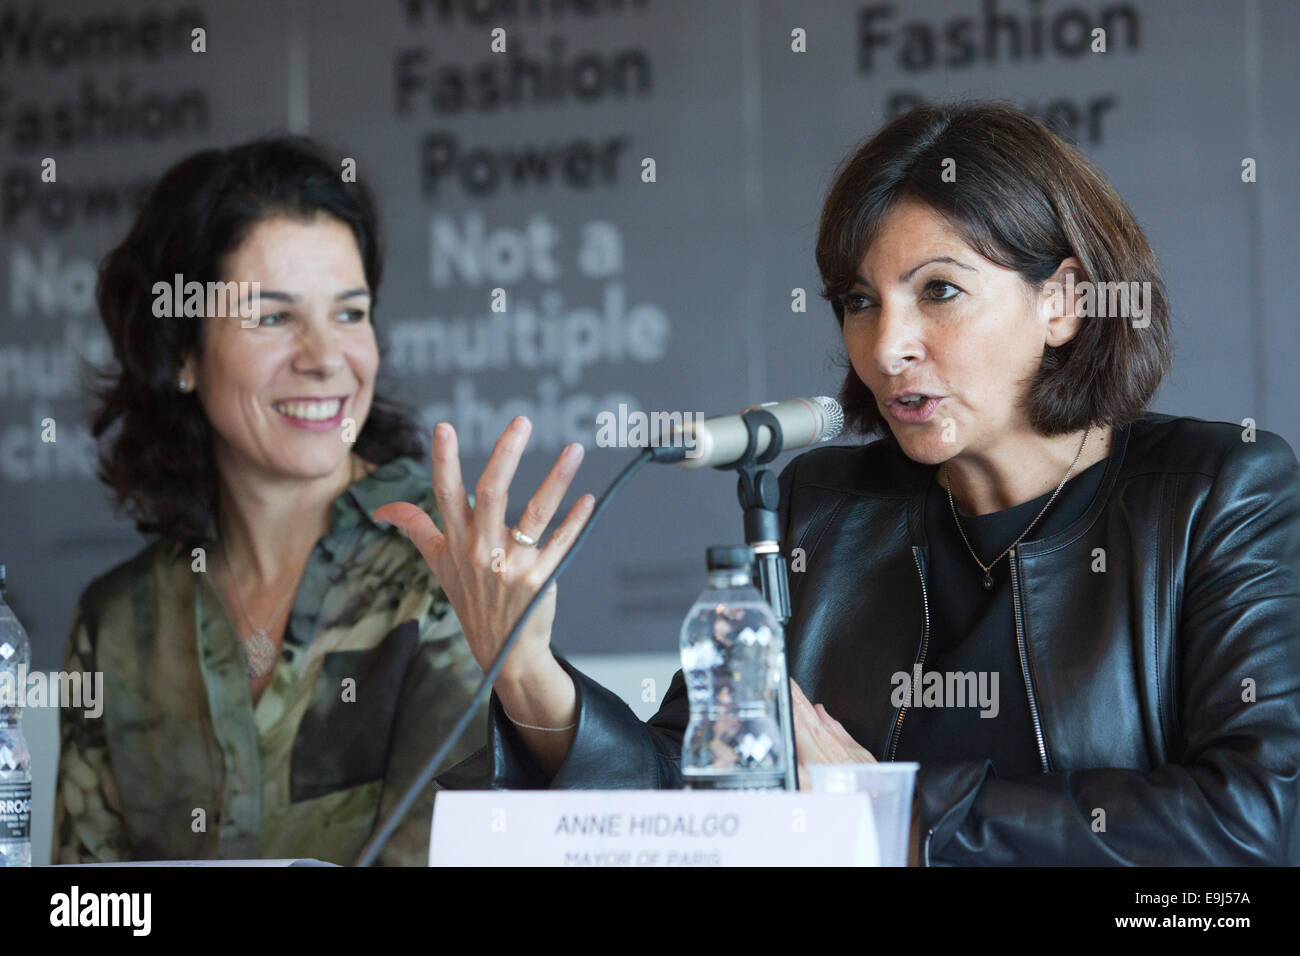 Anne Hidalgo, maire de Paris, s'ouvre l'exposition "Les femmes fashion power' au Design Museum, Londres. avec alice noir, à gauche. Banque D'Images